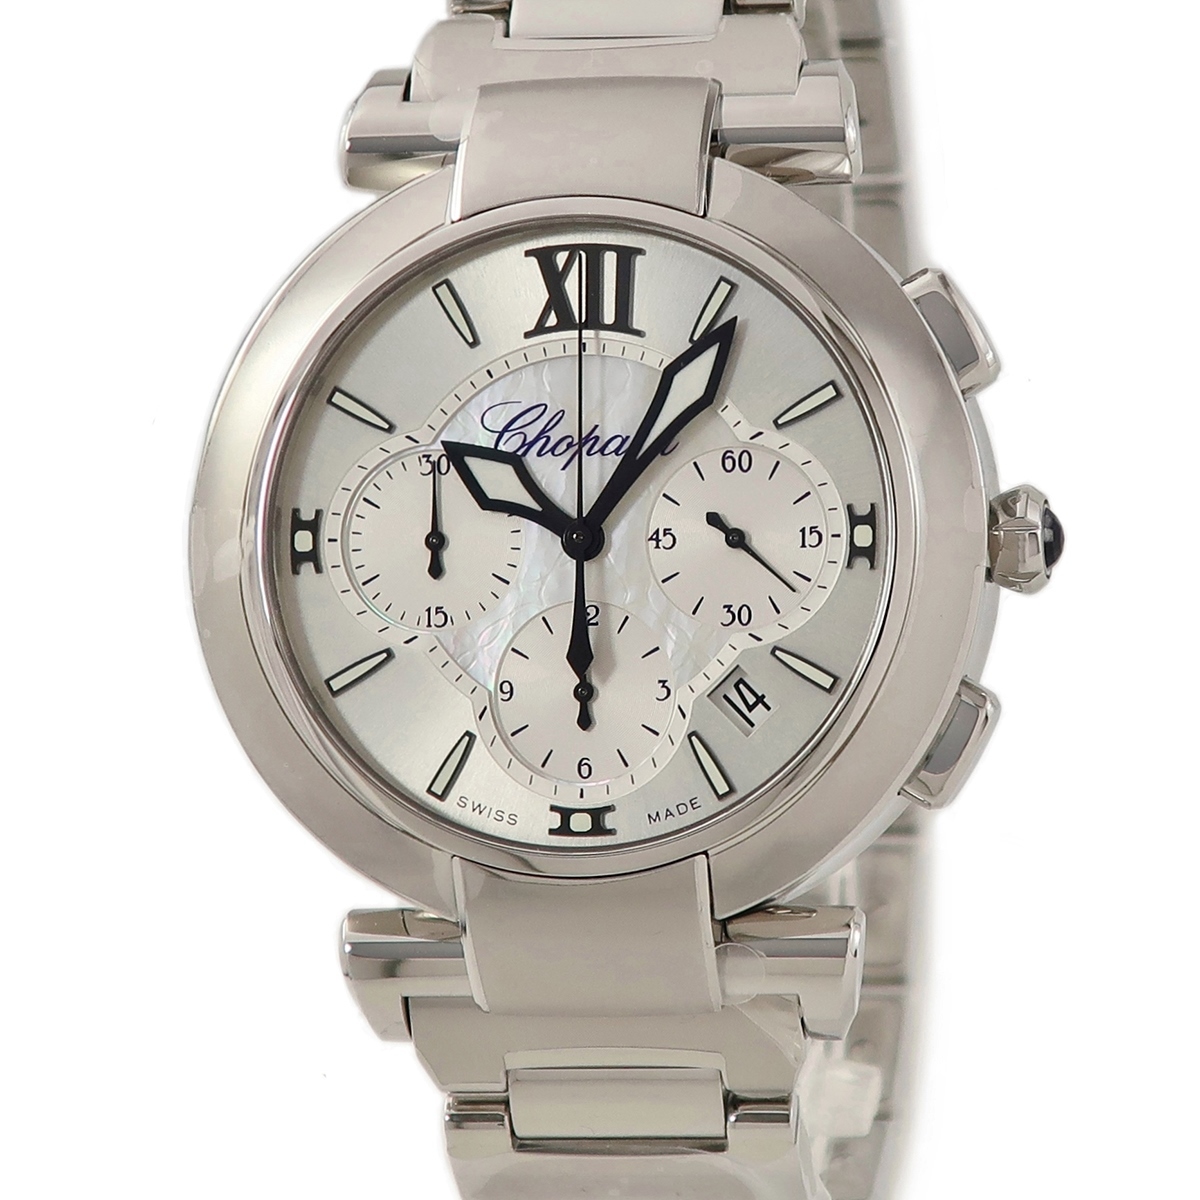 【3年保証】 ショパール インペリアーレ クロノグラフ 388549-3002 未使用 シェル ローマン バー 自動巻き メンズ 腕時計